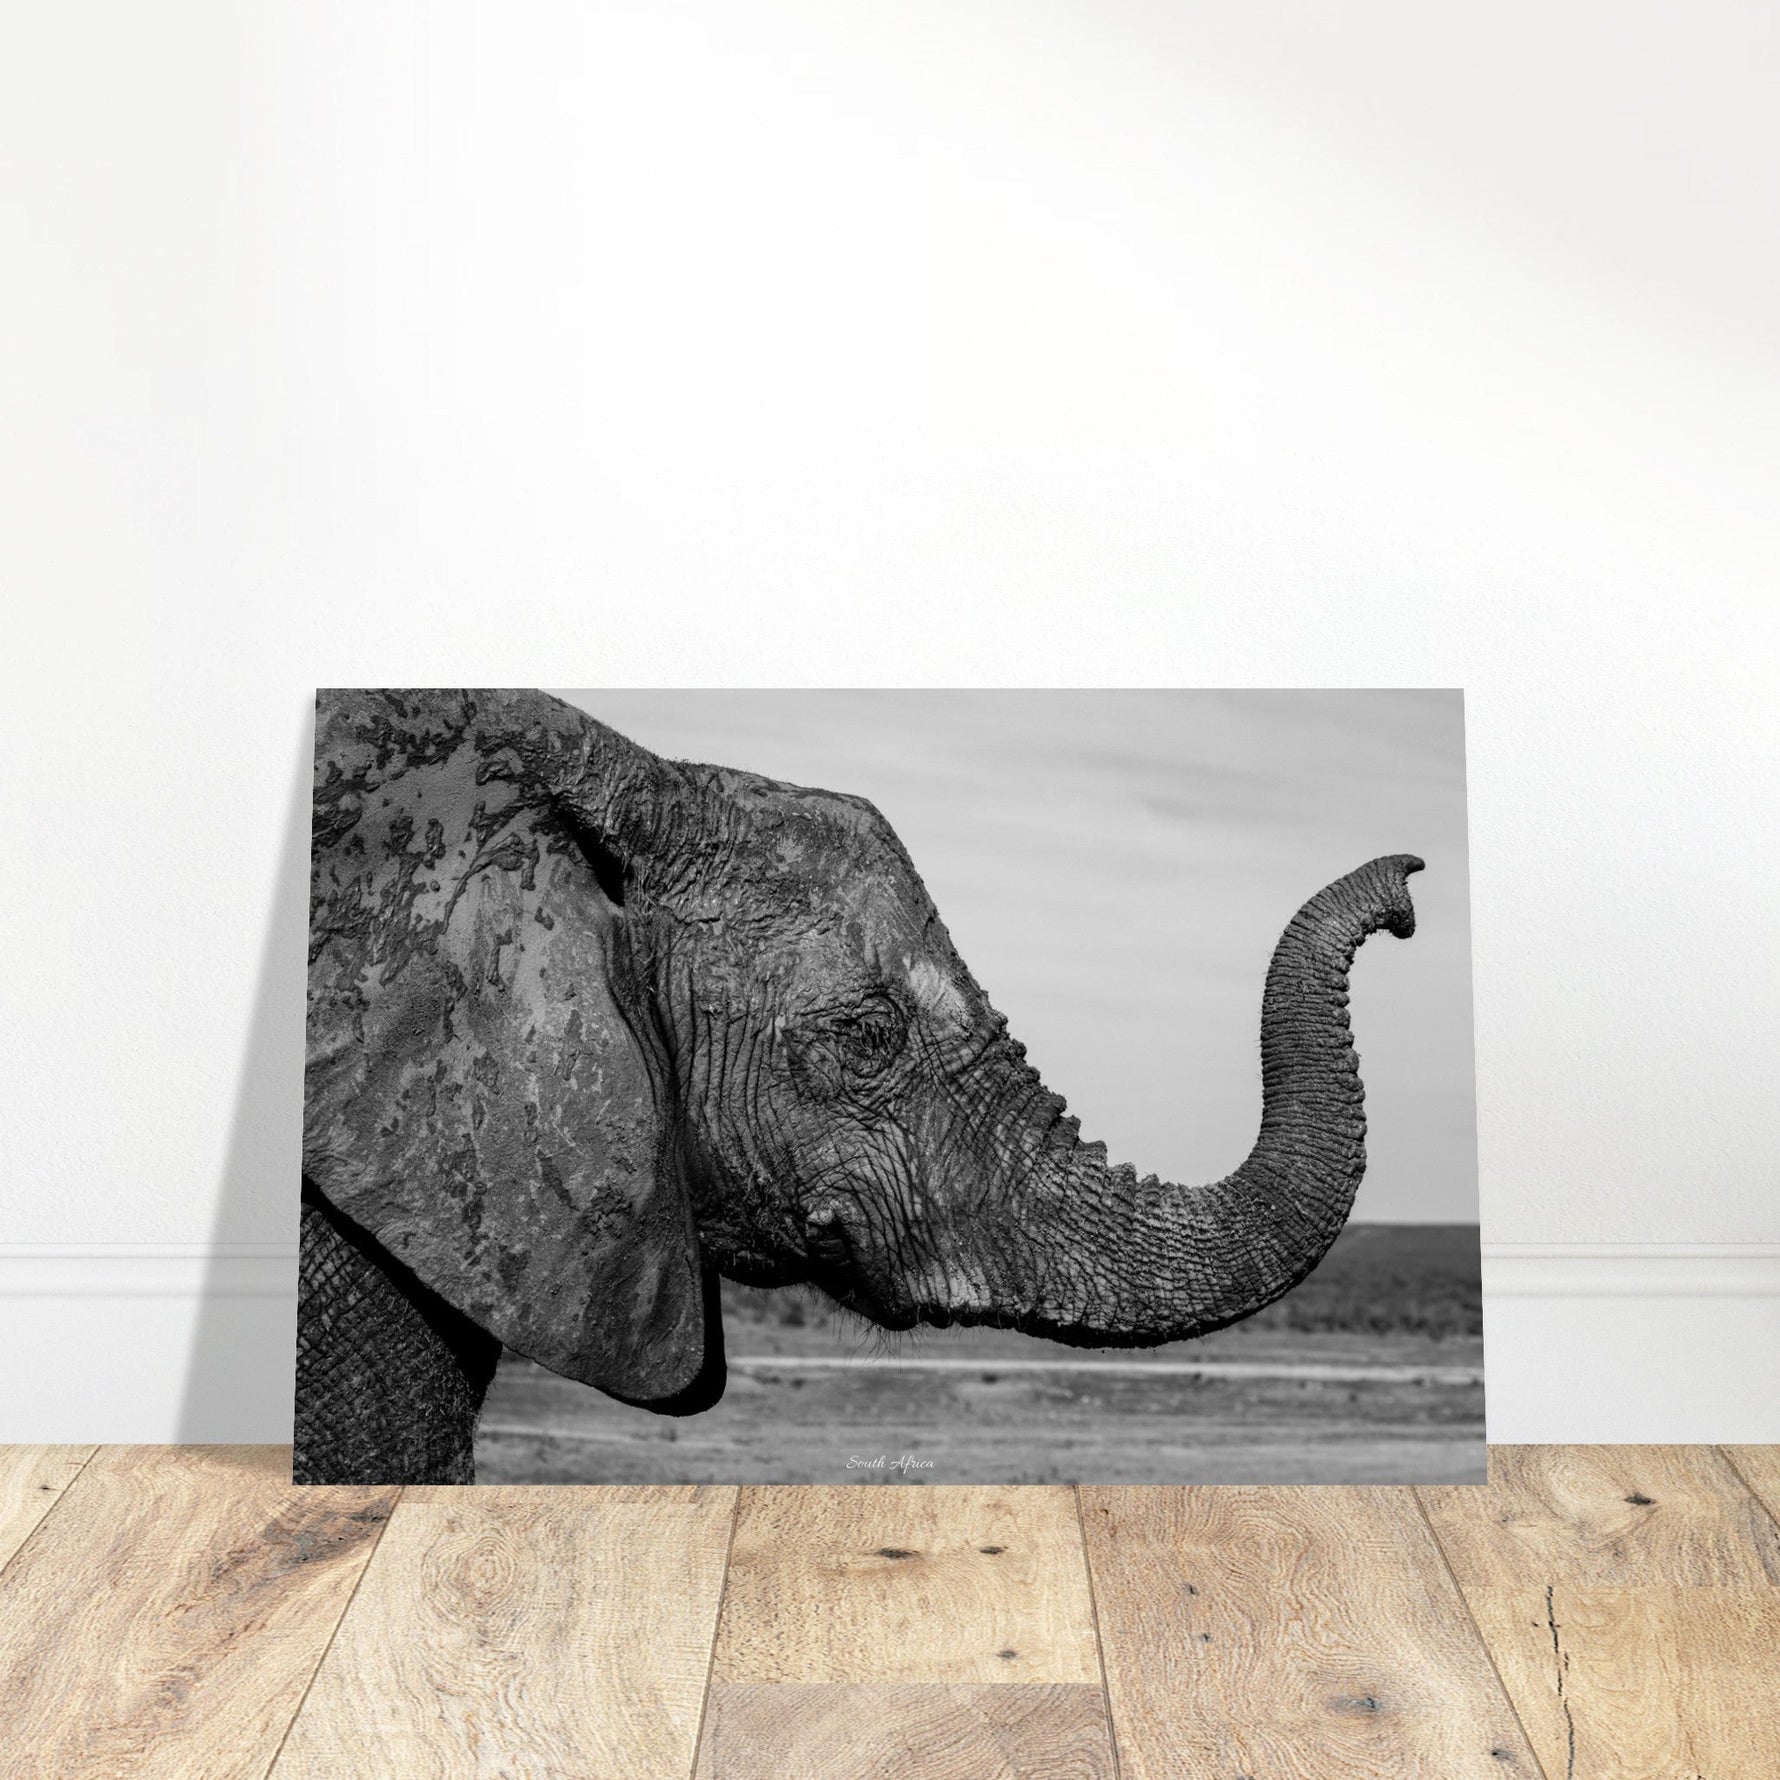 60x90 cm / 24x36″ Premium Matte Paper Poster Intense monochrome Elephant Portrait by Picture This